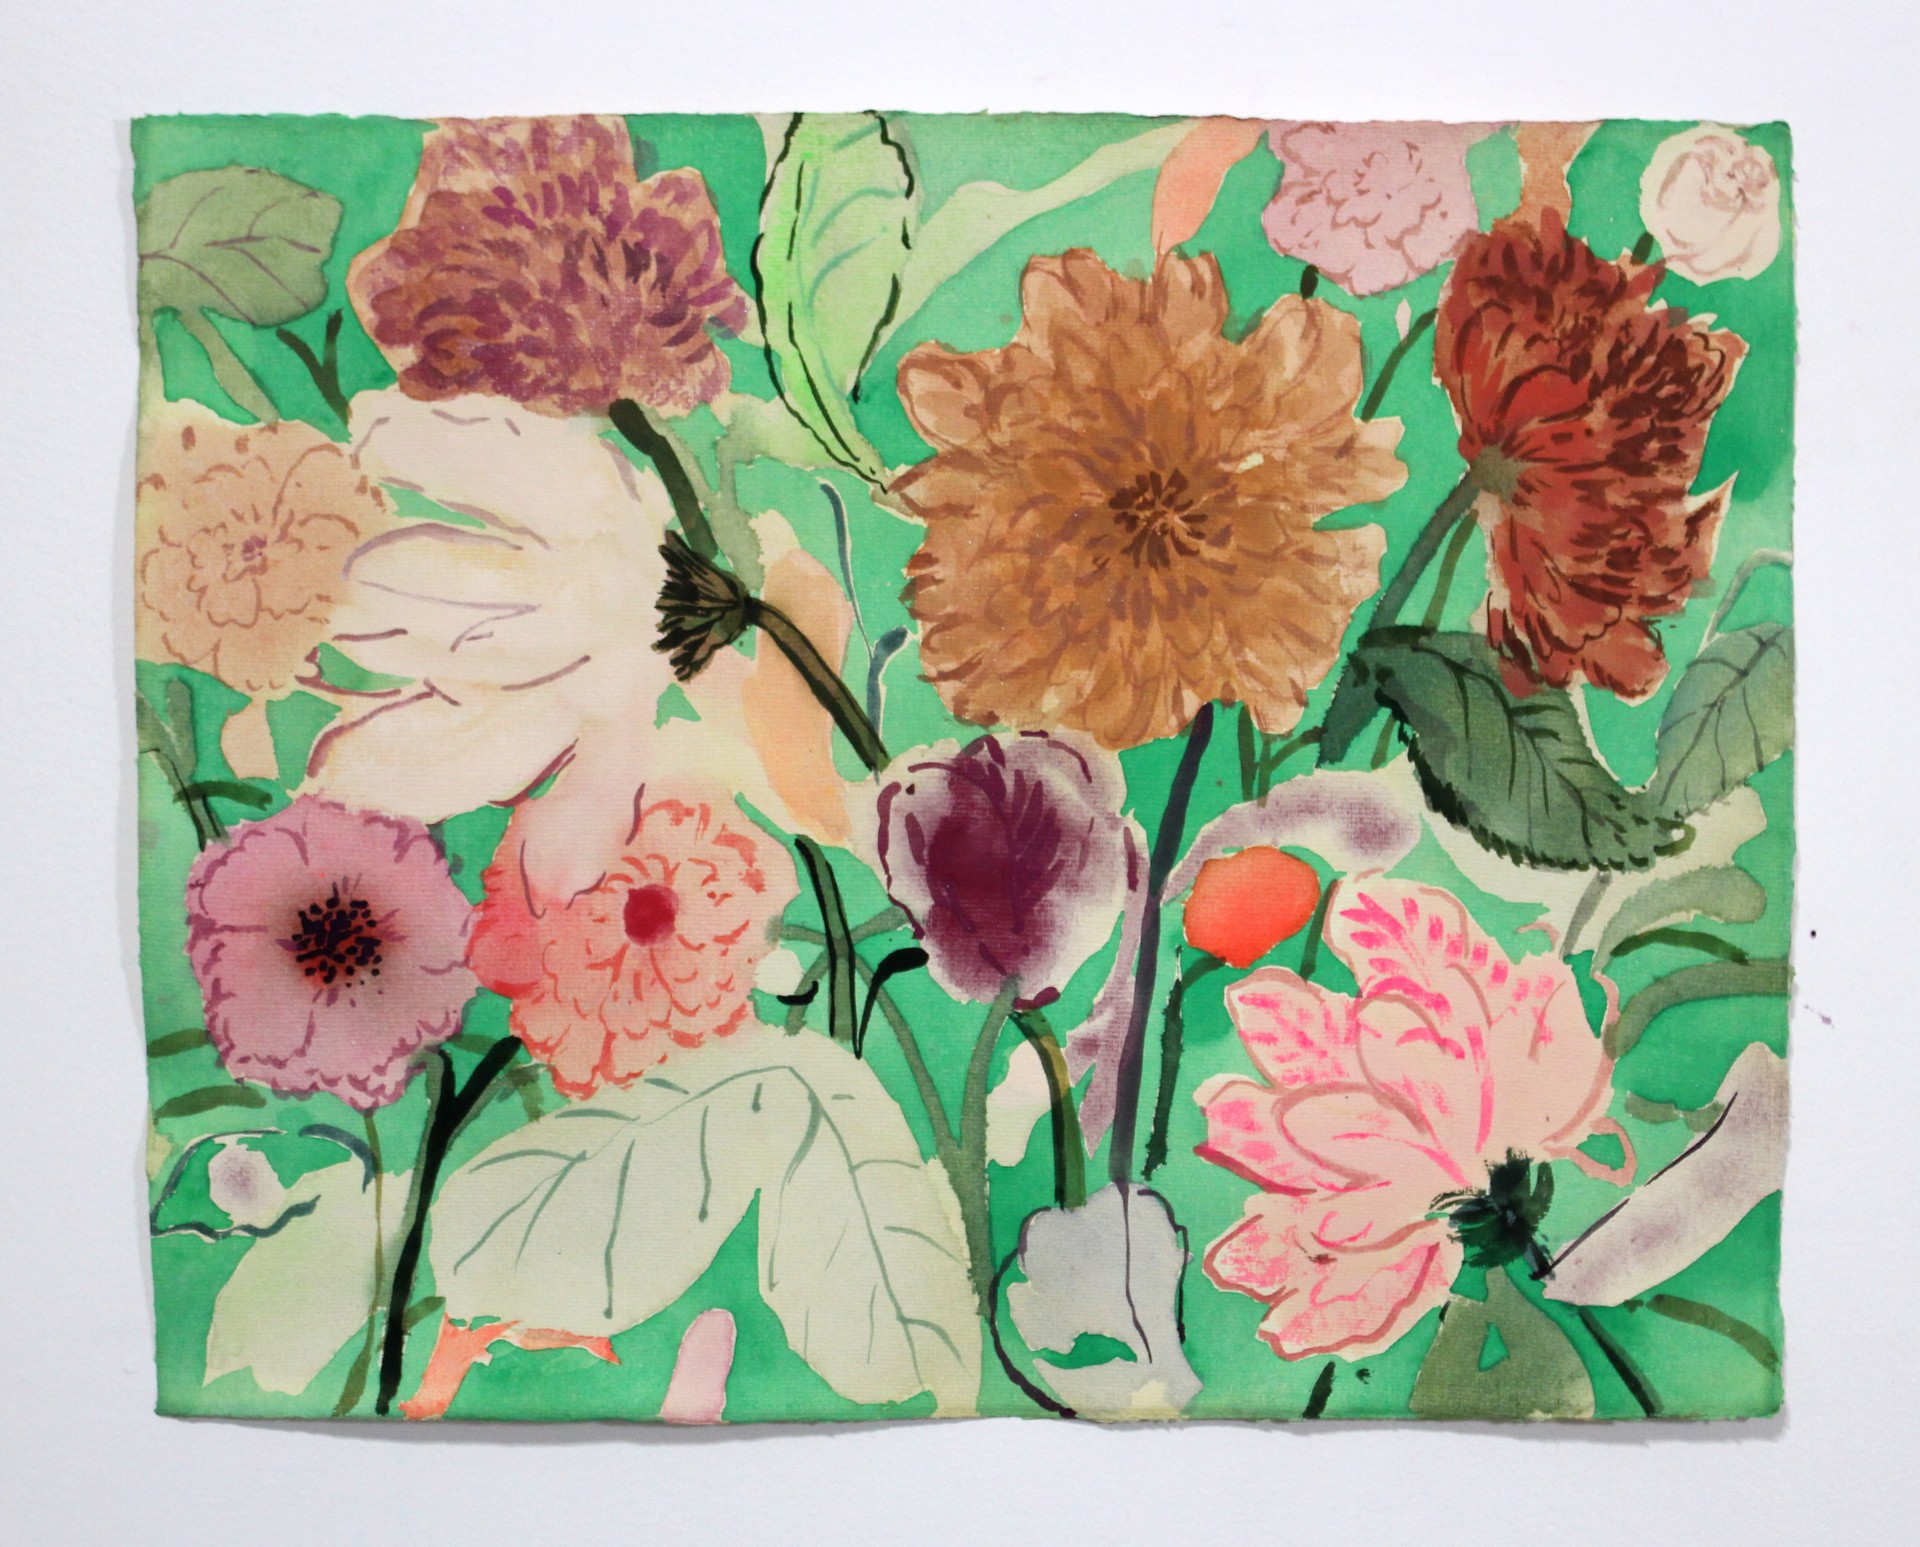 Summer Blooms 1 by Kayla Plosz Antiel